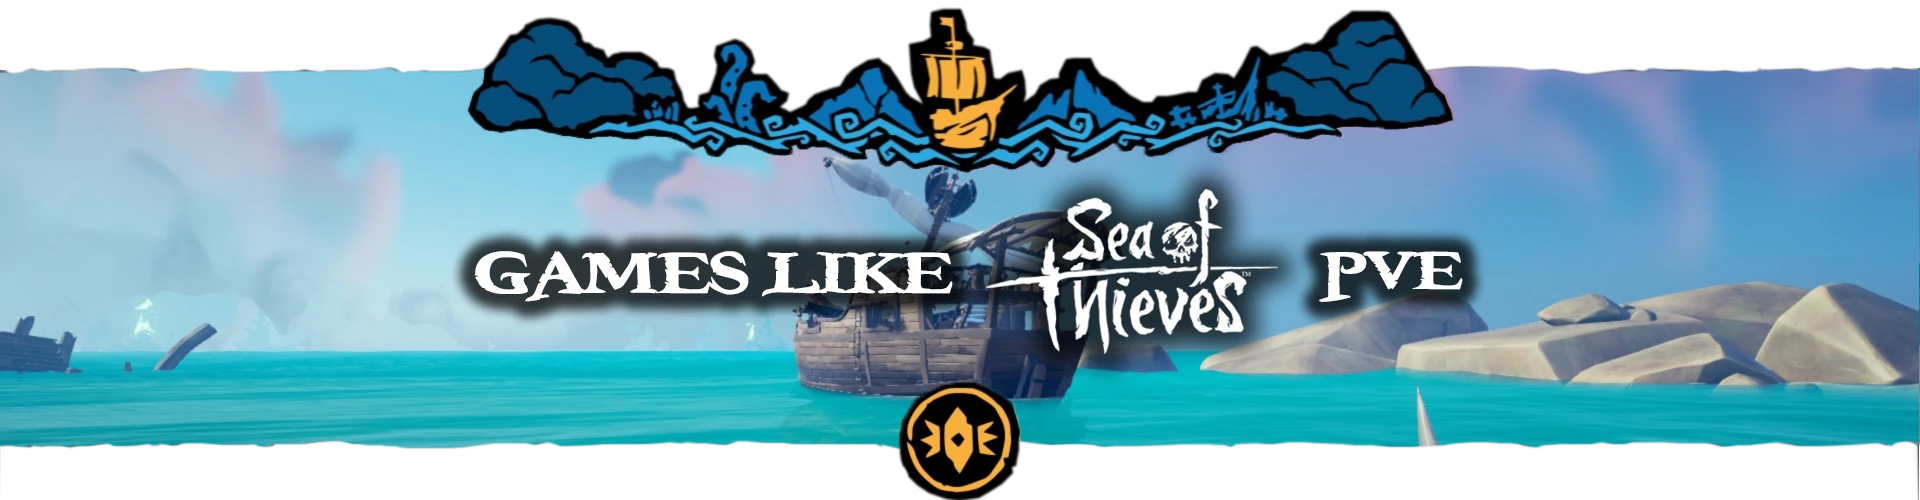 Los Mejores Juegos Multijugador PVE como Sea of Thieves